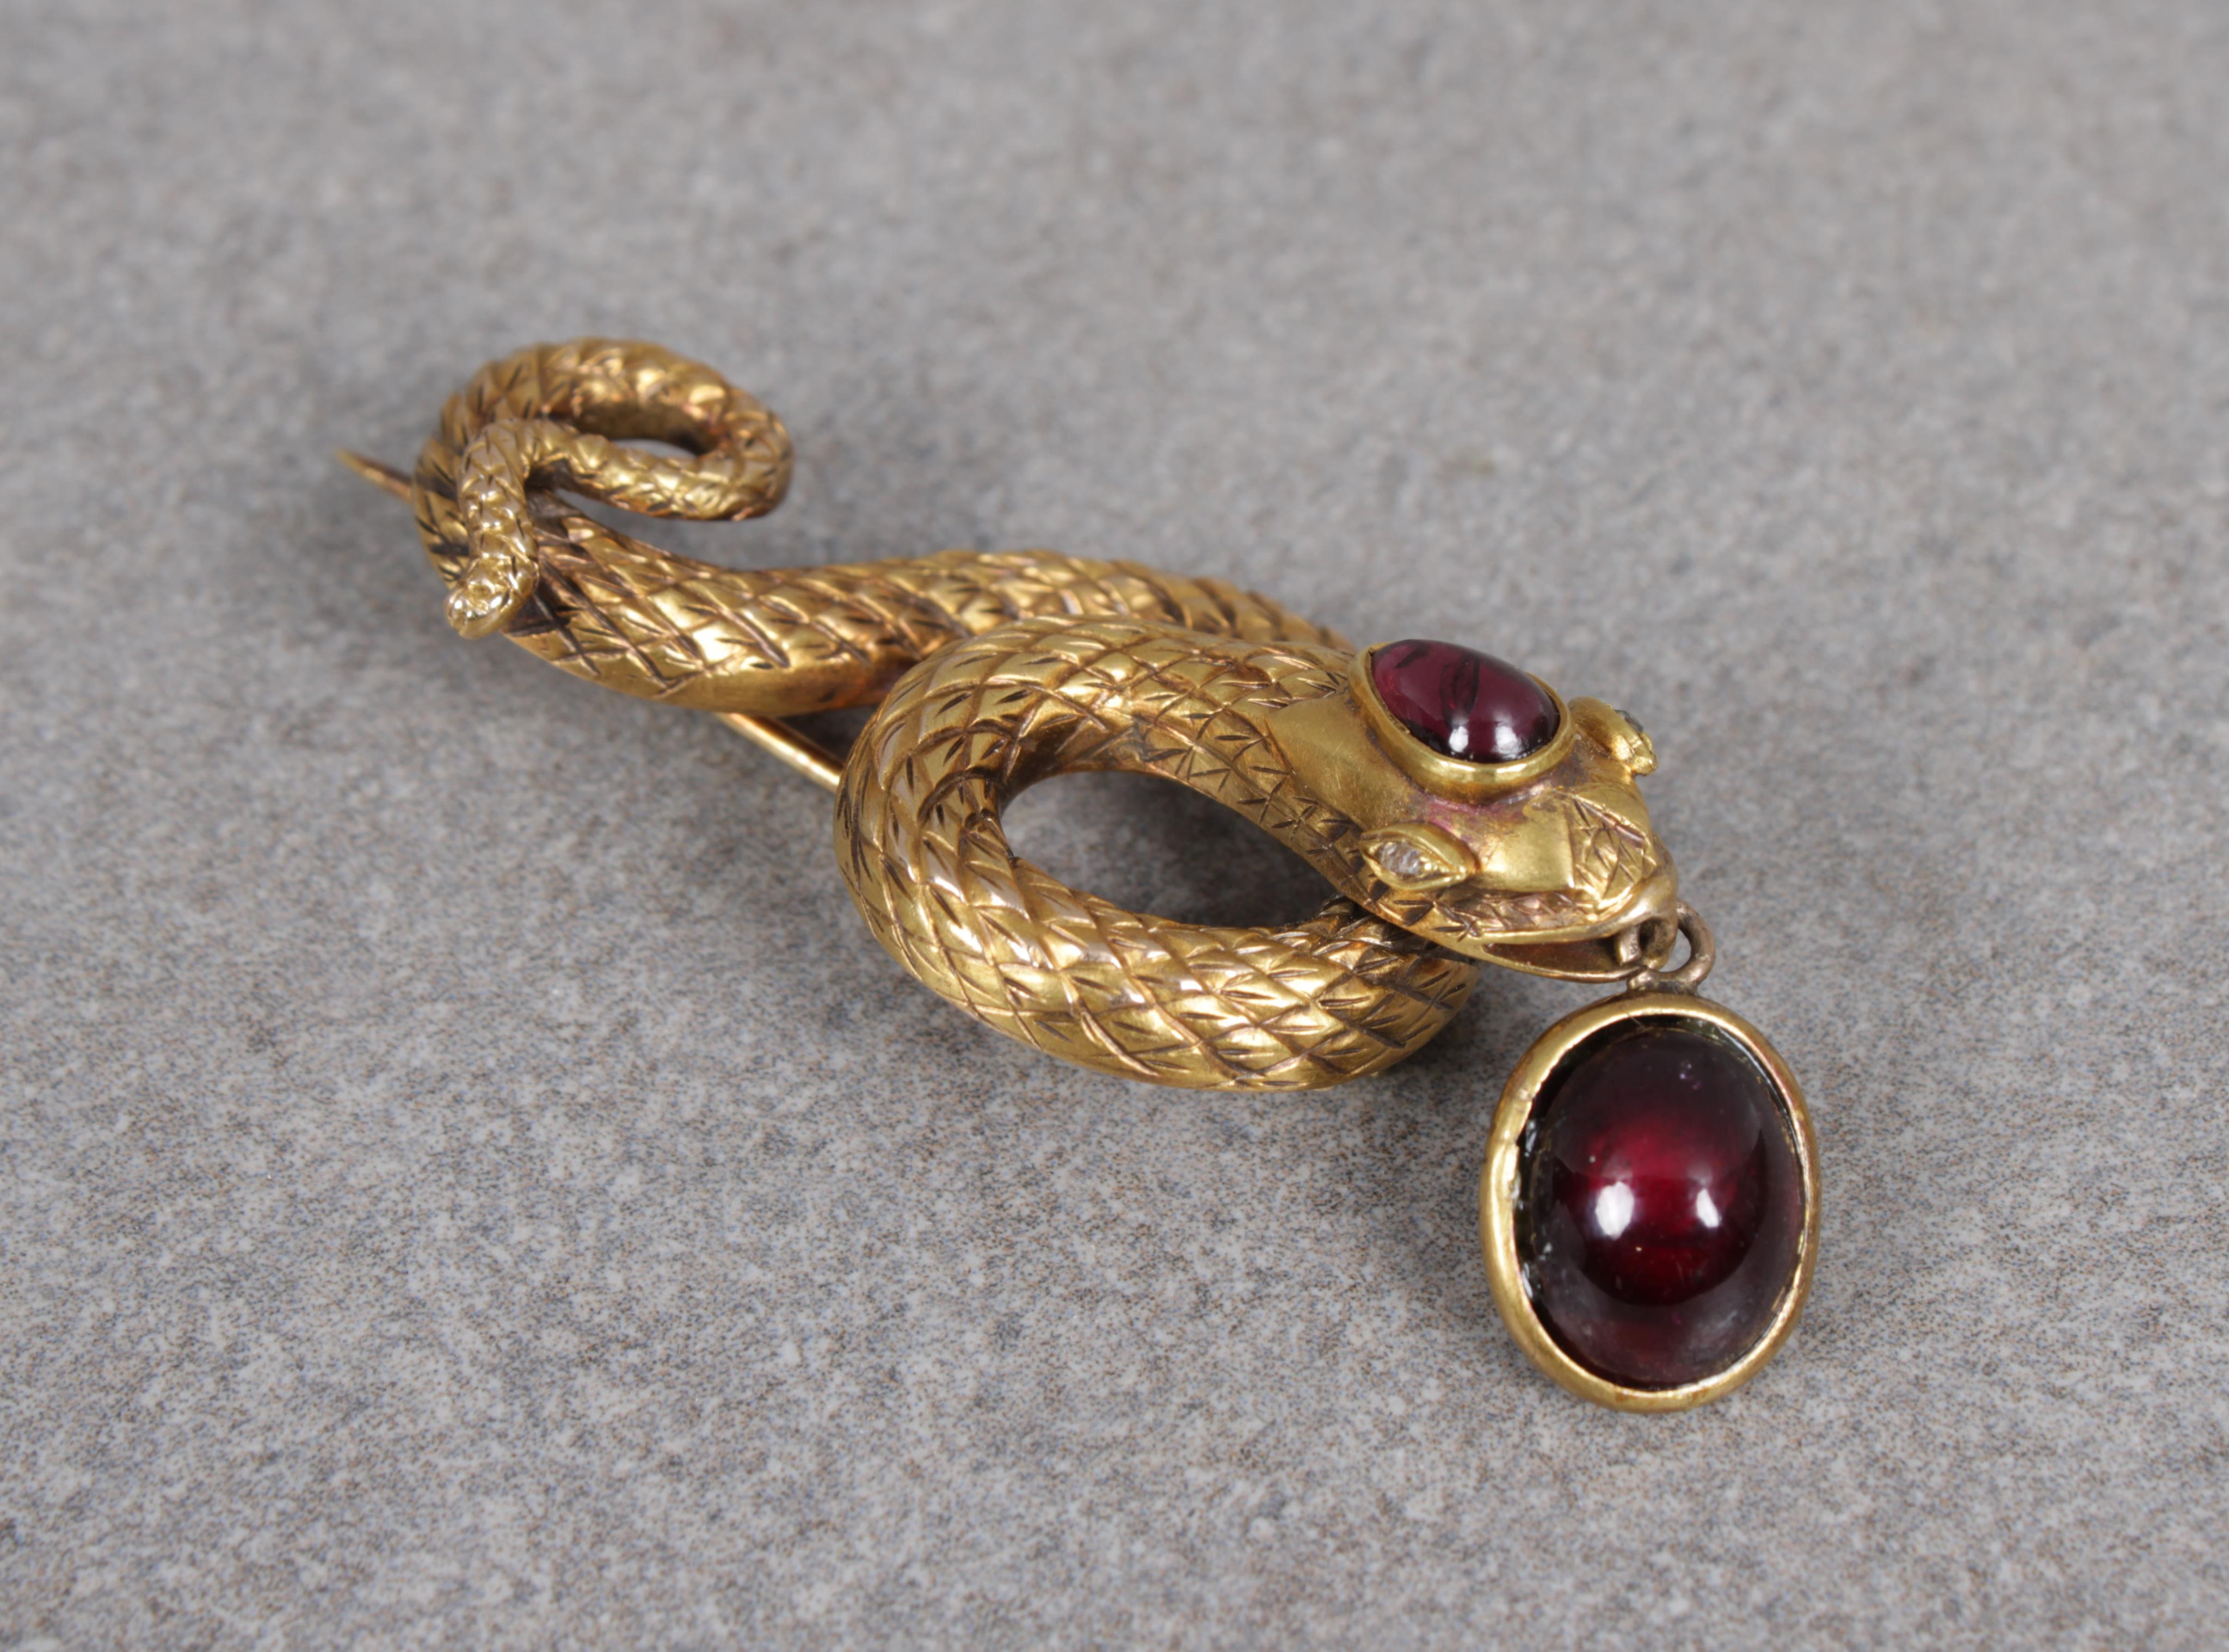 A gold serpent brooch